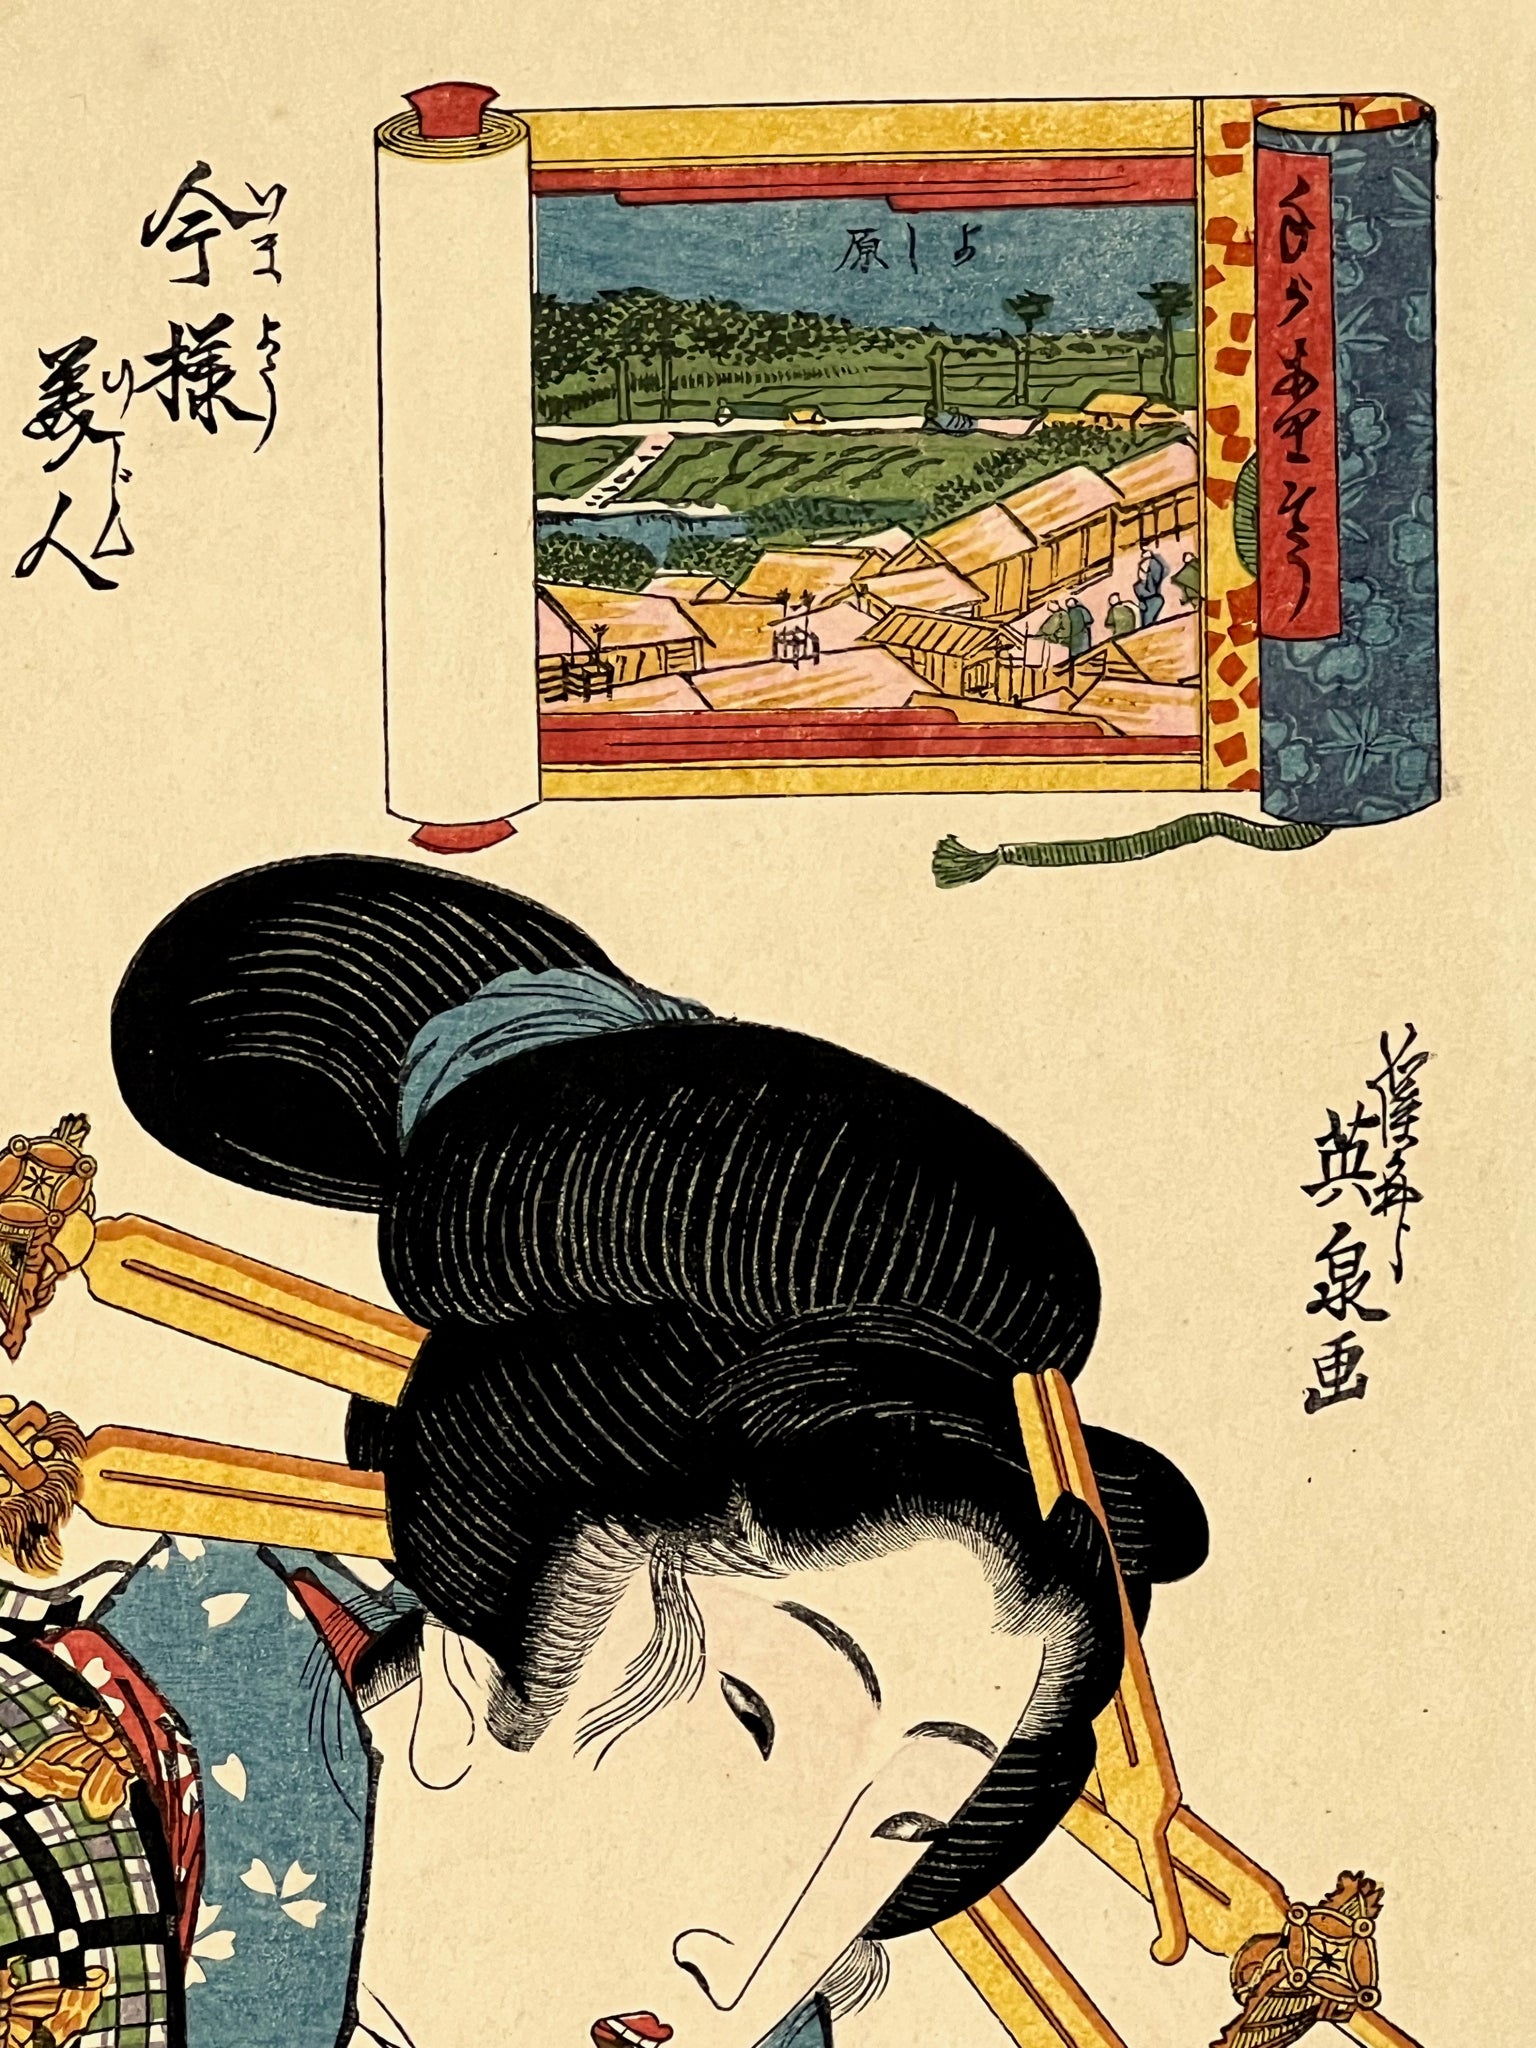 estampe japonaise geisha avec longues épingles dans les cheveux, dans un cartouche le quartier du Yoshiwara, gros plan sur le paysage dans le cartouche, et texte en japonais